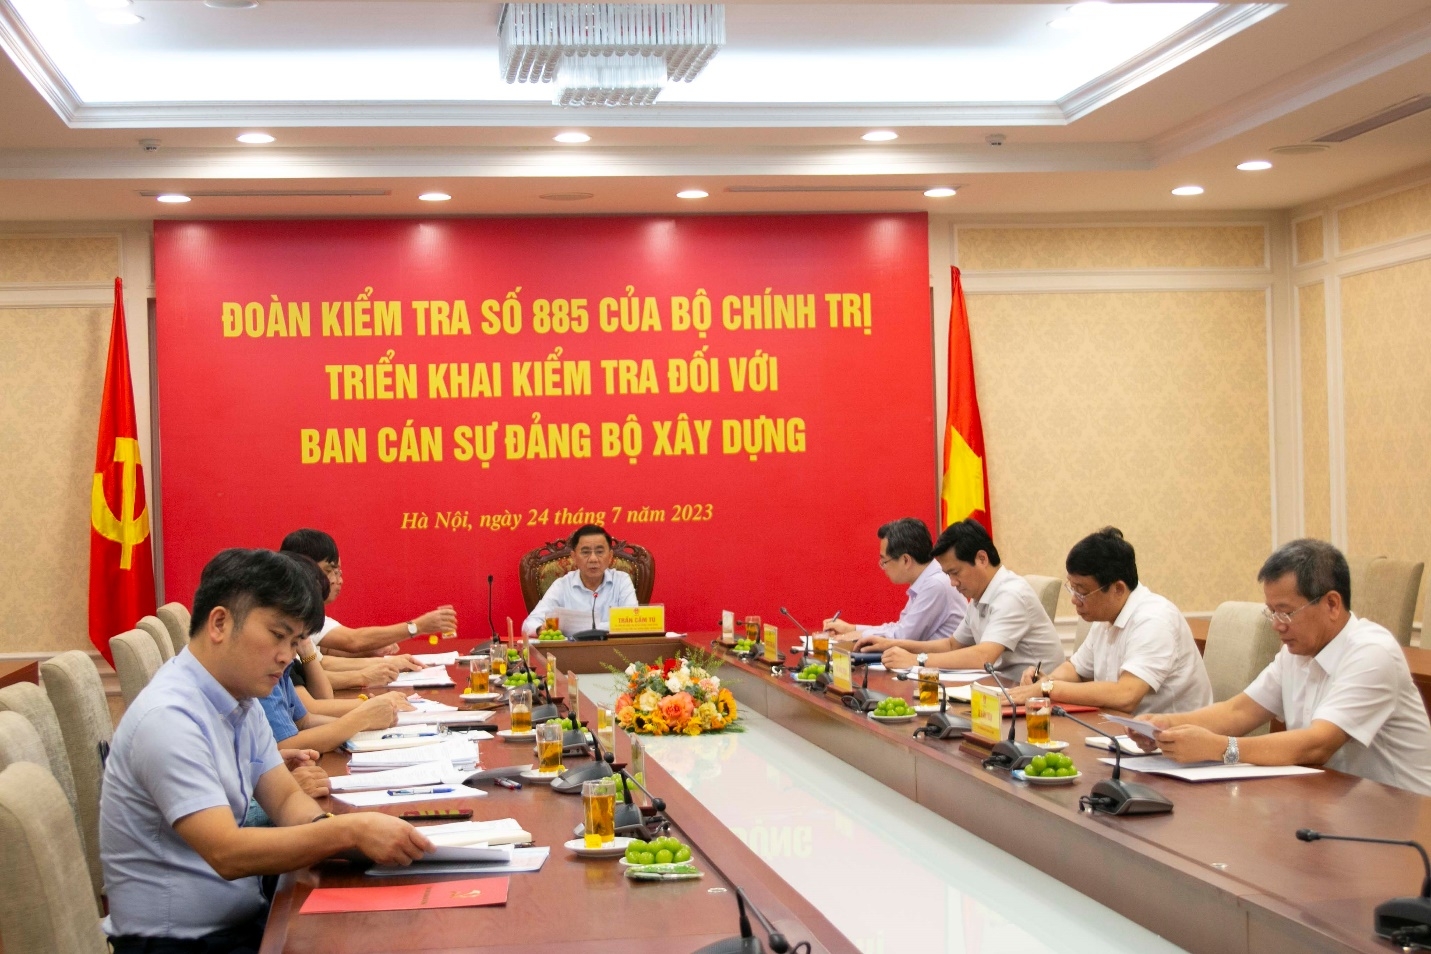 Đoàn Kiểm tra số 885 của Bộ Chính trị triển khai Quyết định kiểm tra đối với Ban Cán sự Đảng Bộ Xây dựng